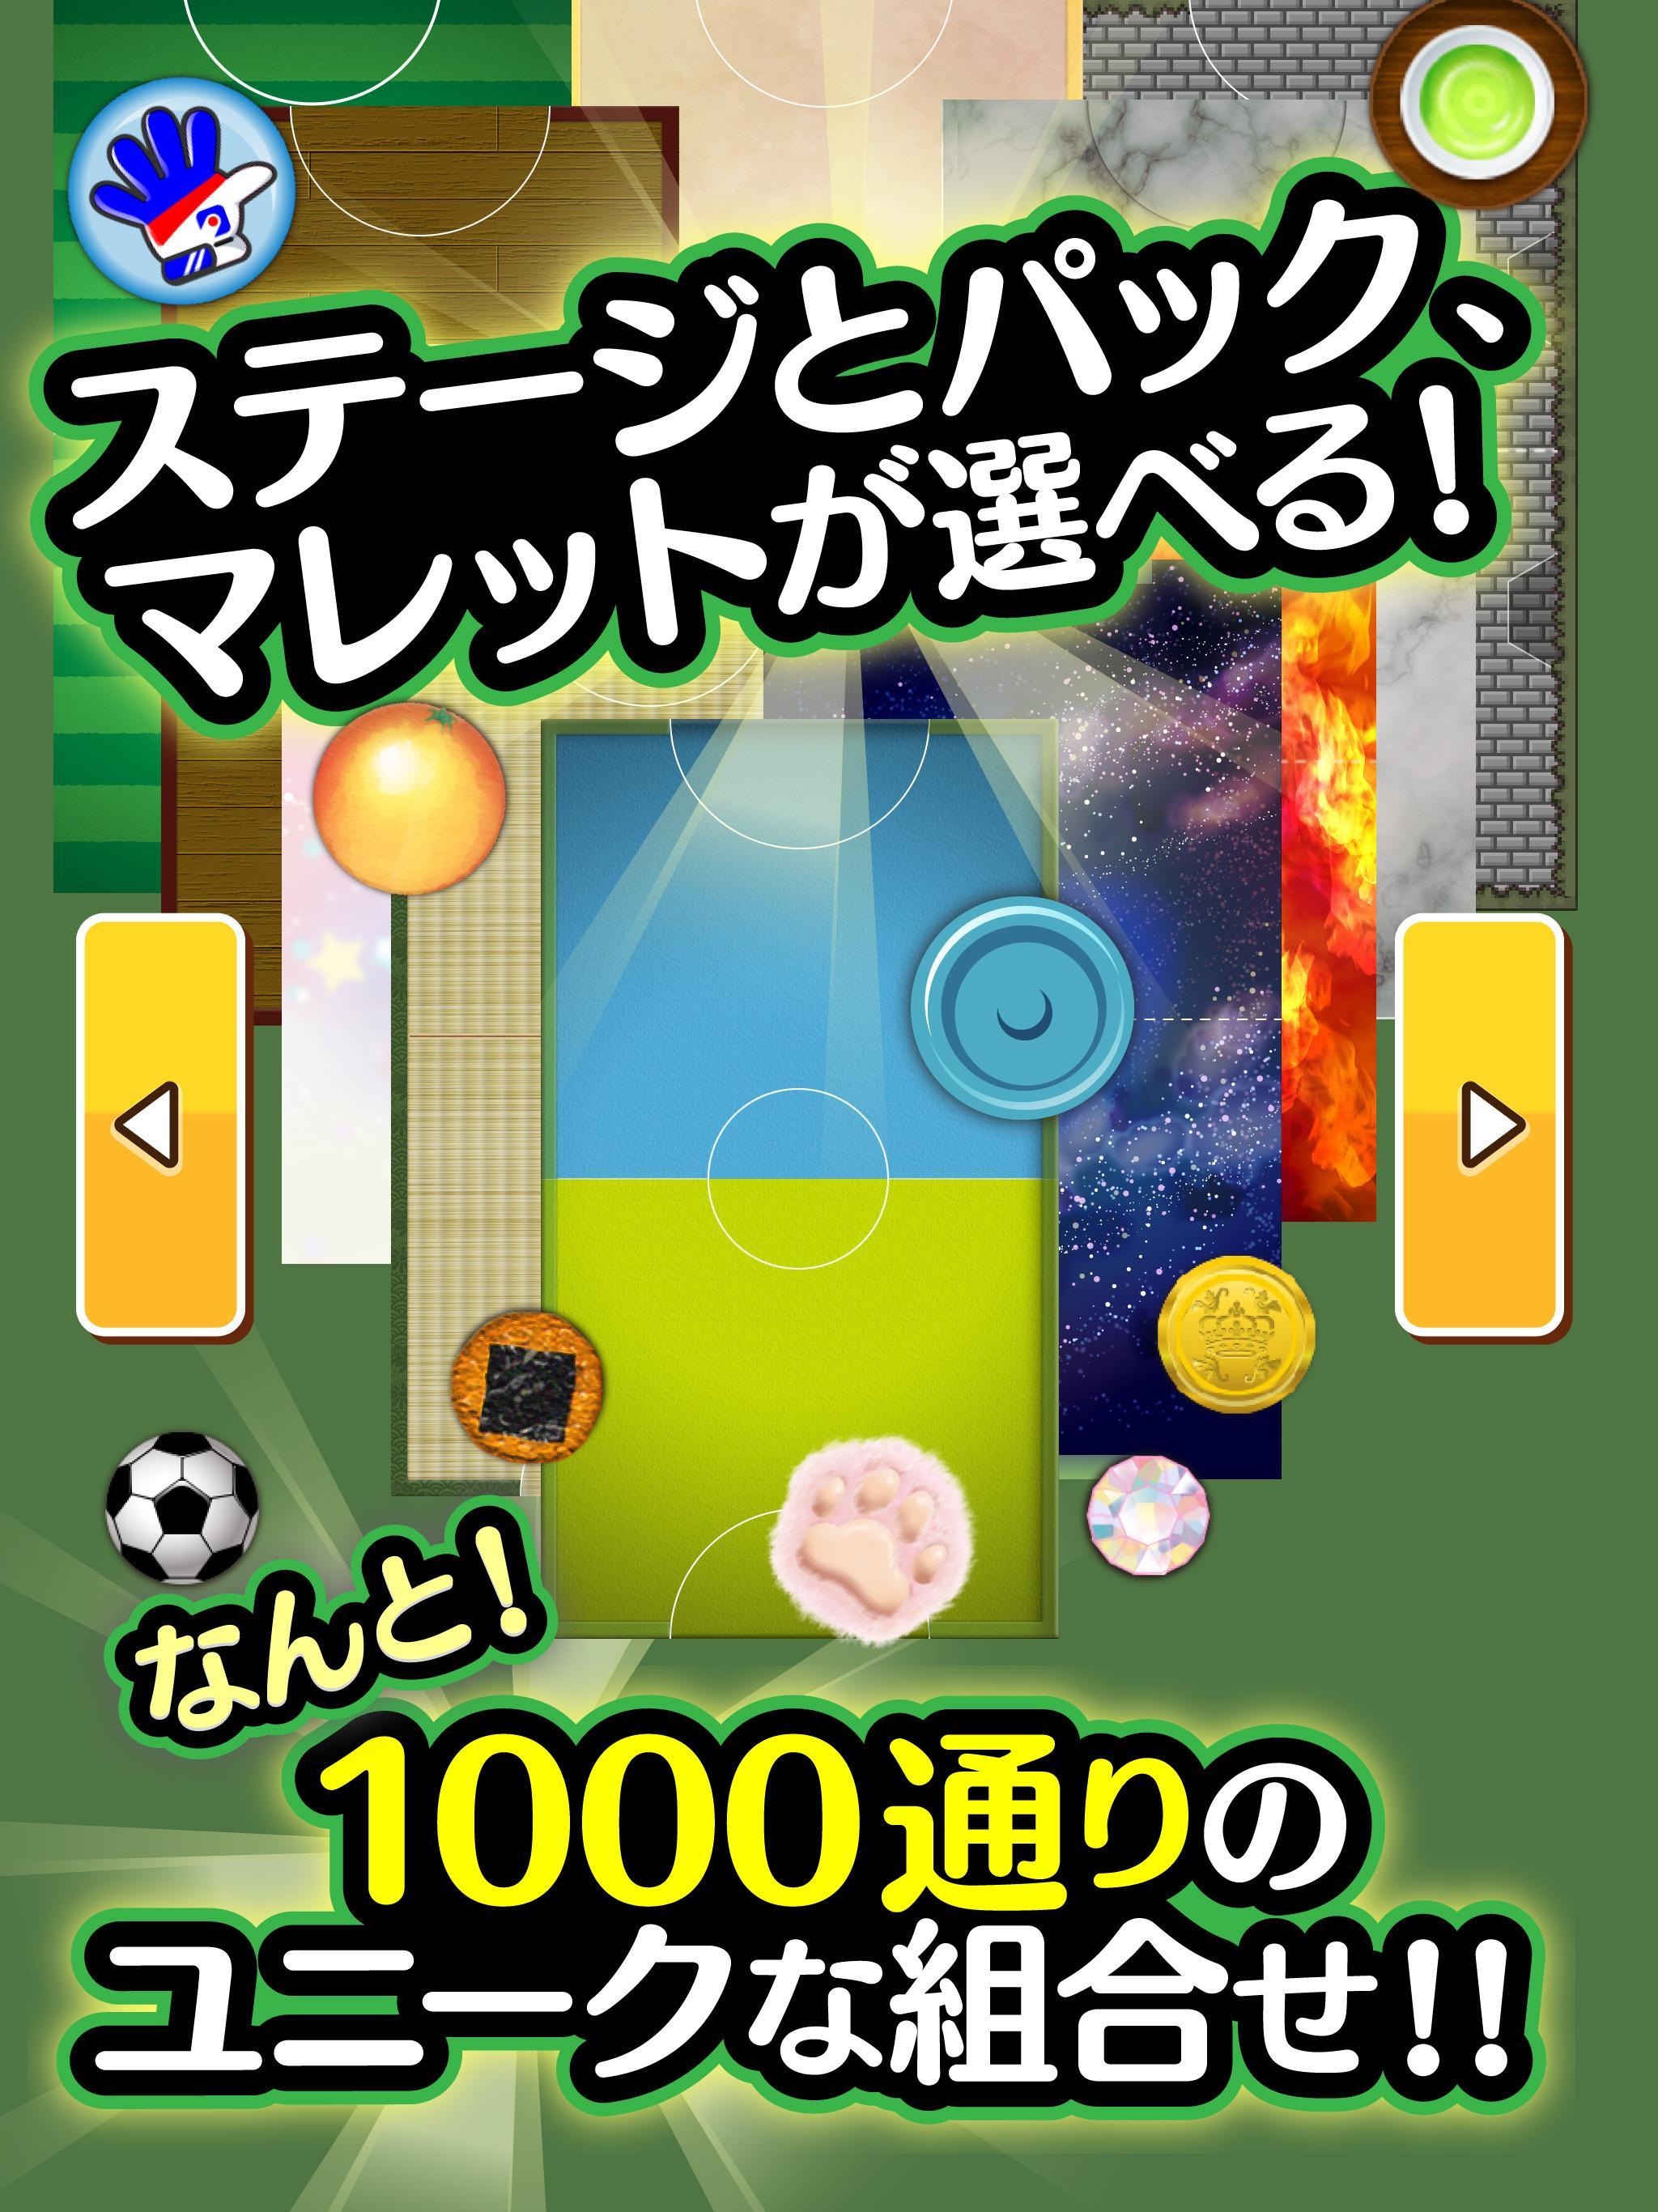 ふつうのエアホッケー 無料のホッケーゲーム For Android Apk Download